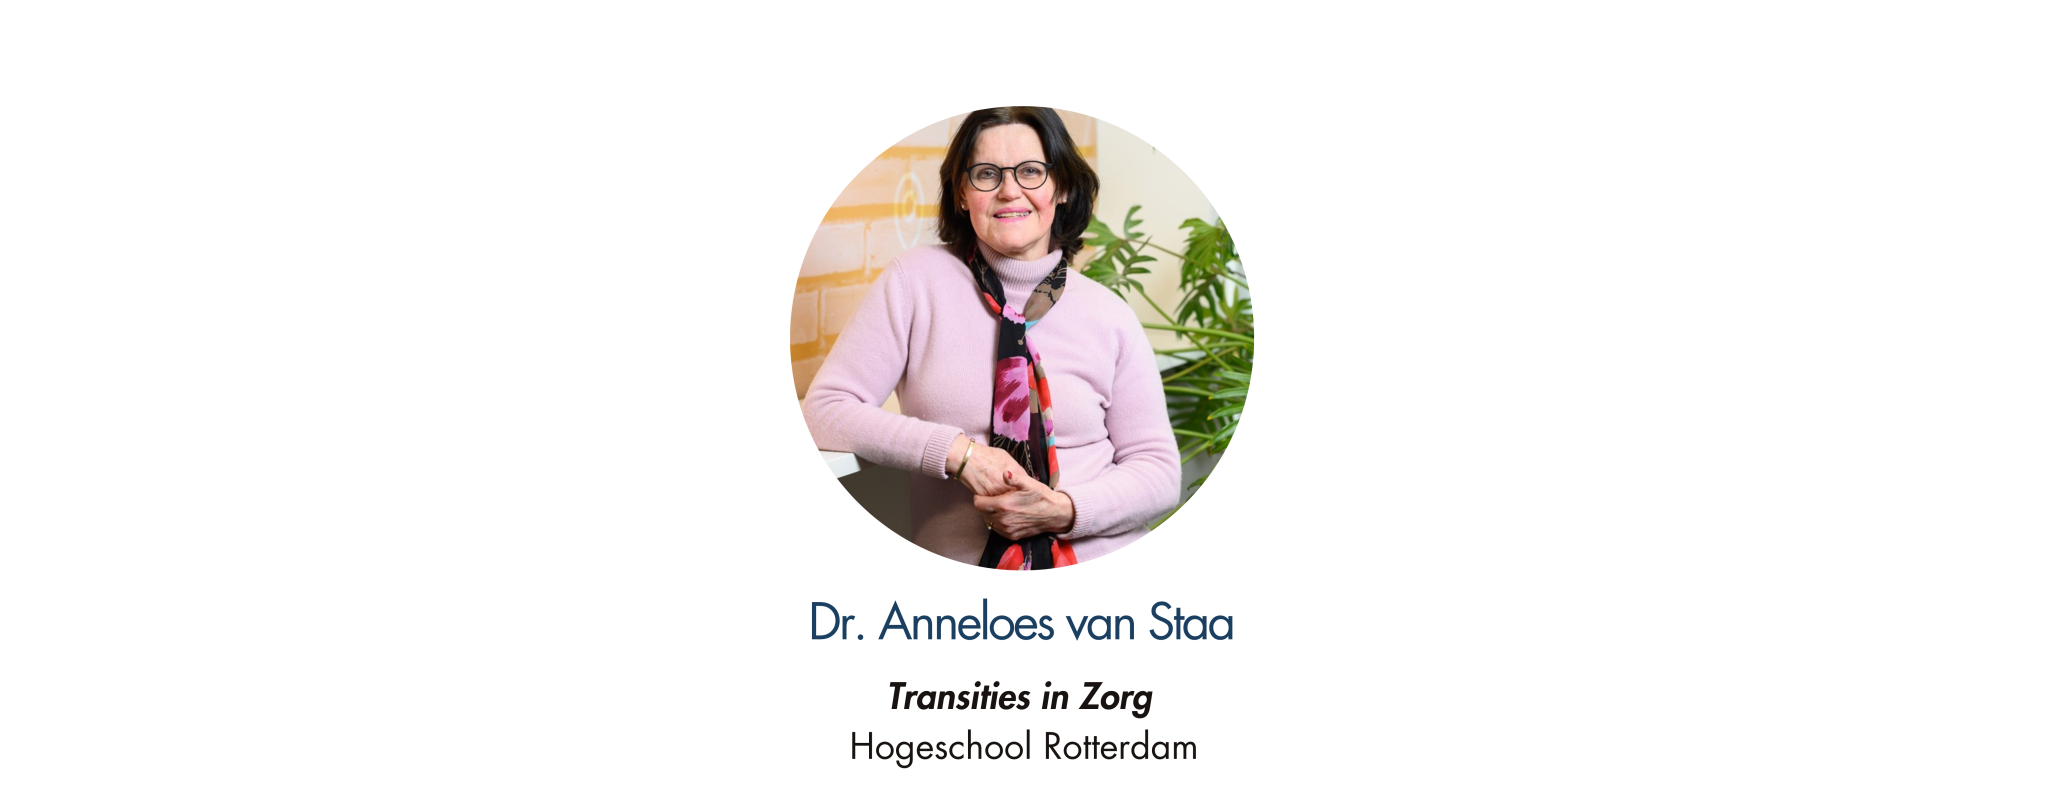 Dr. Anneloes van Staa